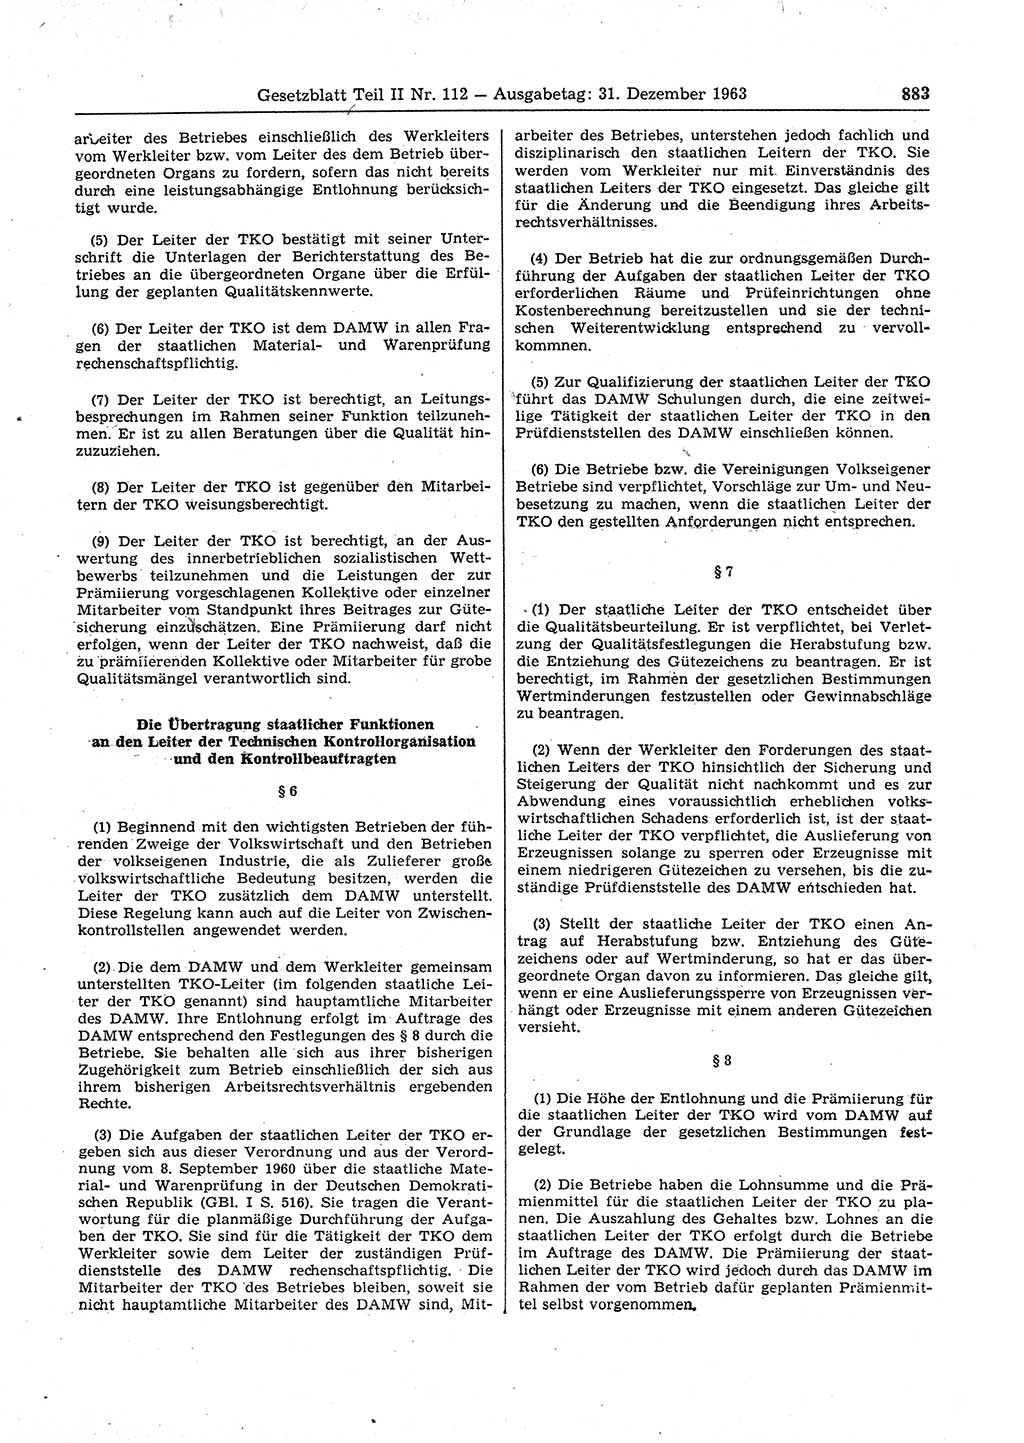 Gesetzblatt (GBl.) der Deutschen Demokratischen Republik (DDR) Teil ⅠⅠ 1963, Seite 883 (GBl. DDR ⅠⅠ 1963, S. 883)